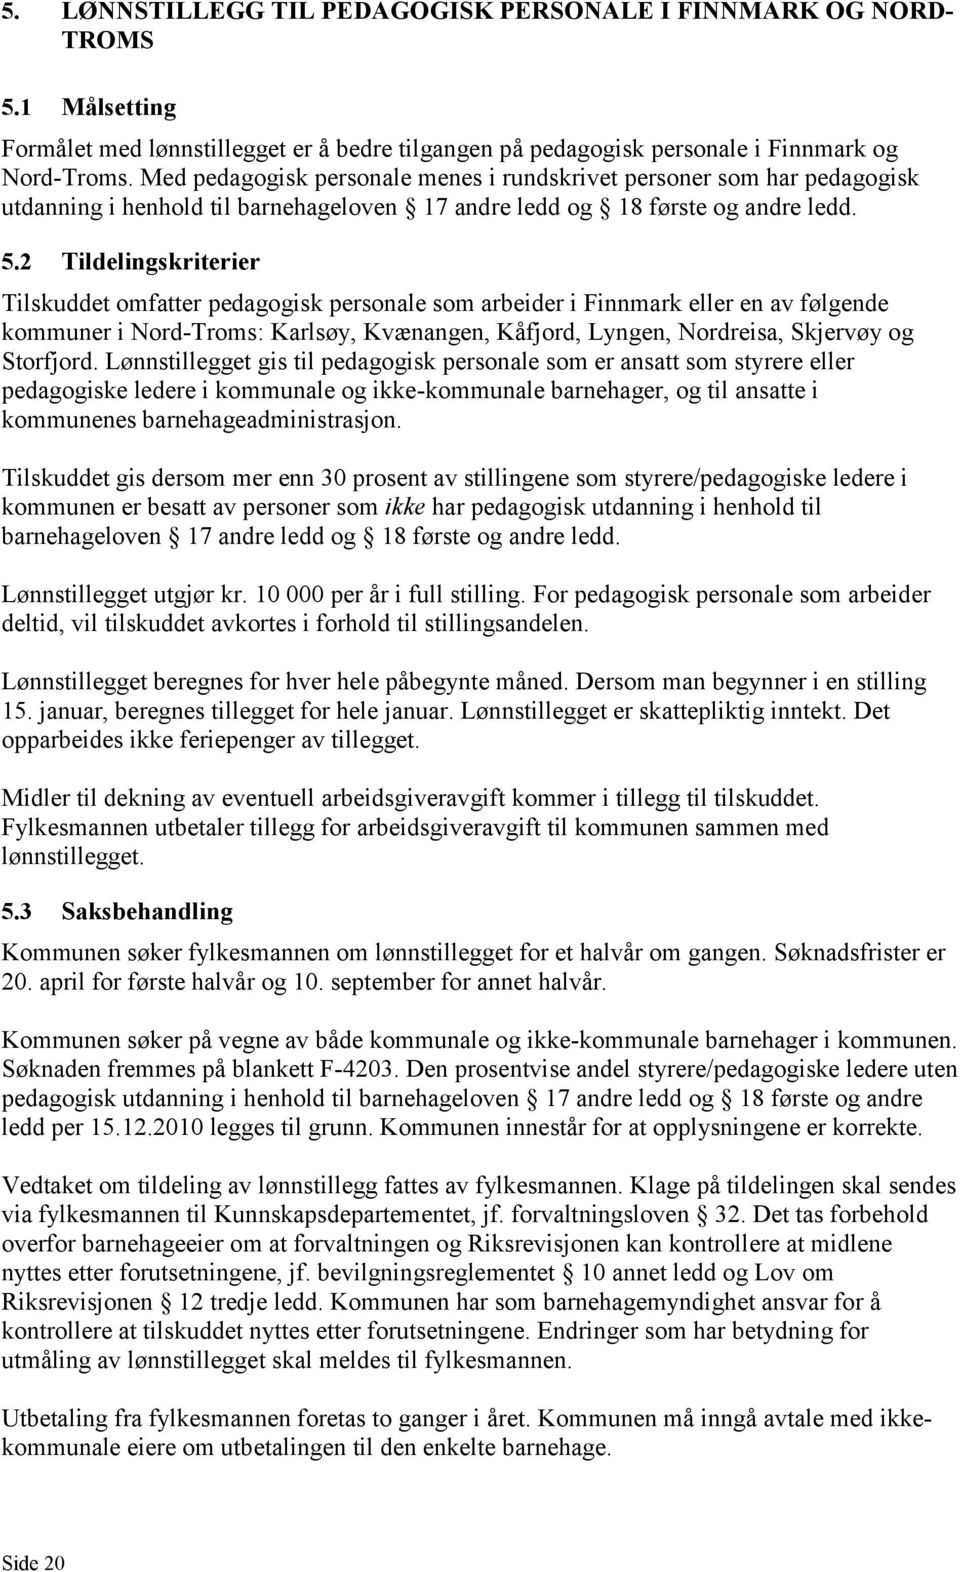 2 Tildelingskriterier Tilskuddet omfatter pedagogisk personale som arbeider i Finnmark eller en av følgende kommuner i Nord-Troms: Karlsøy, Kvænangen, Kåfjord, Lyngen, Nordreisa, Skjervøy og